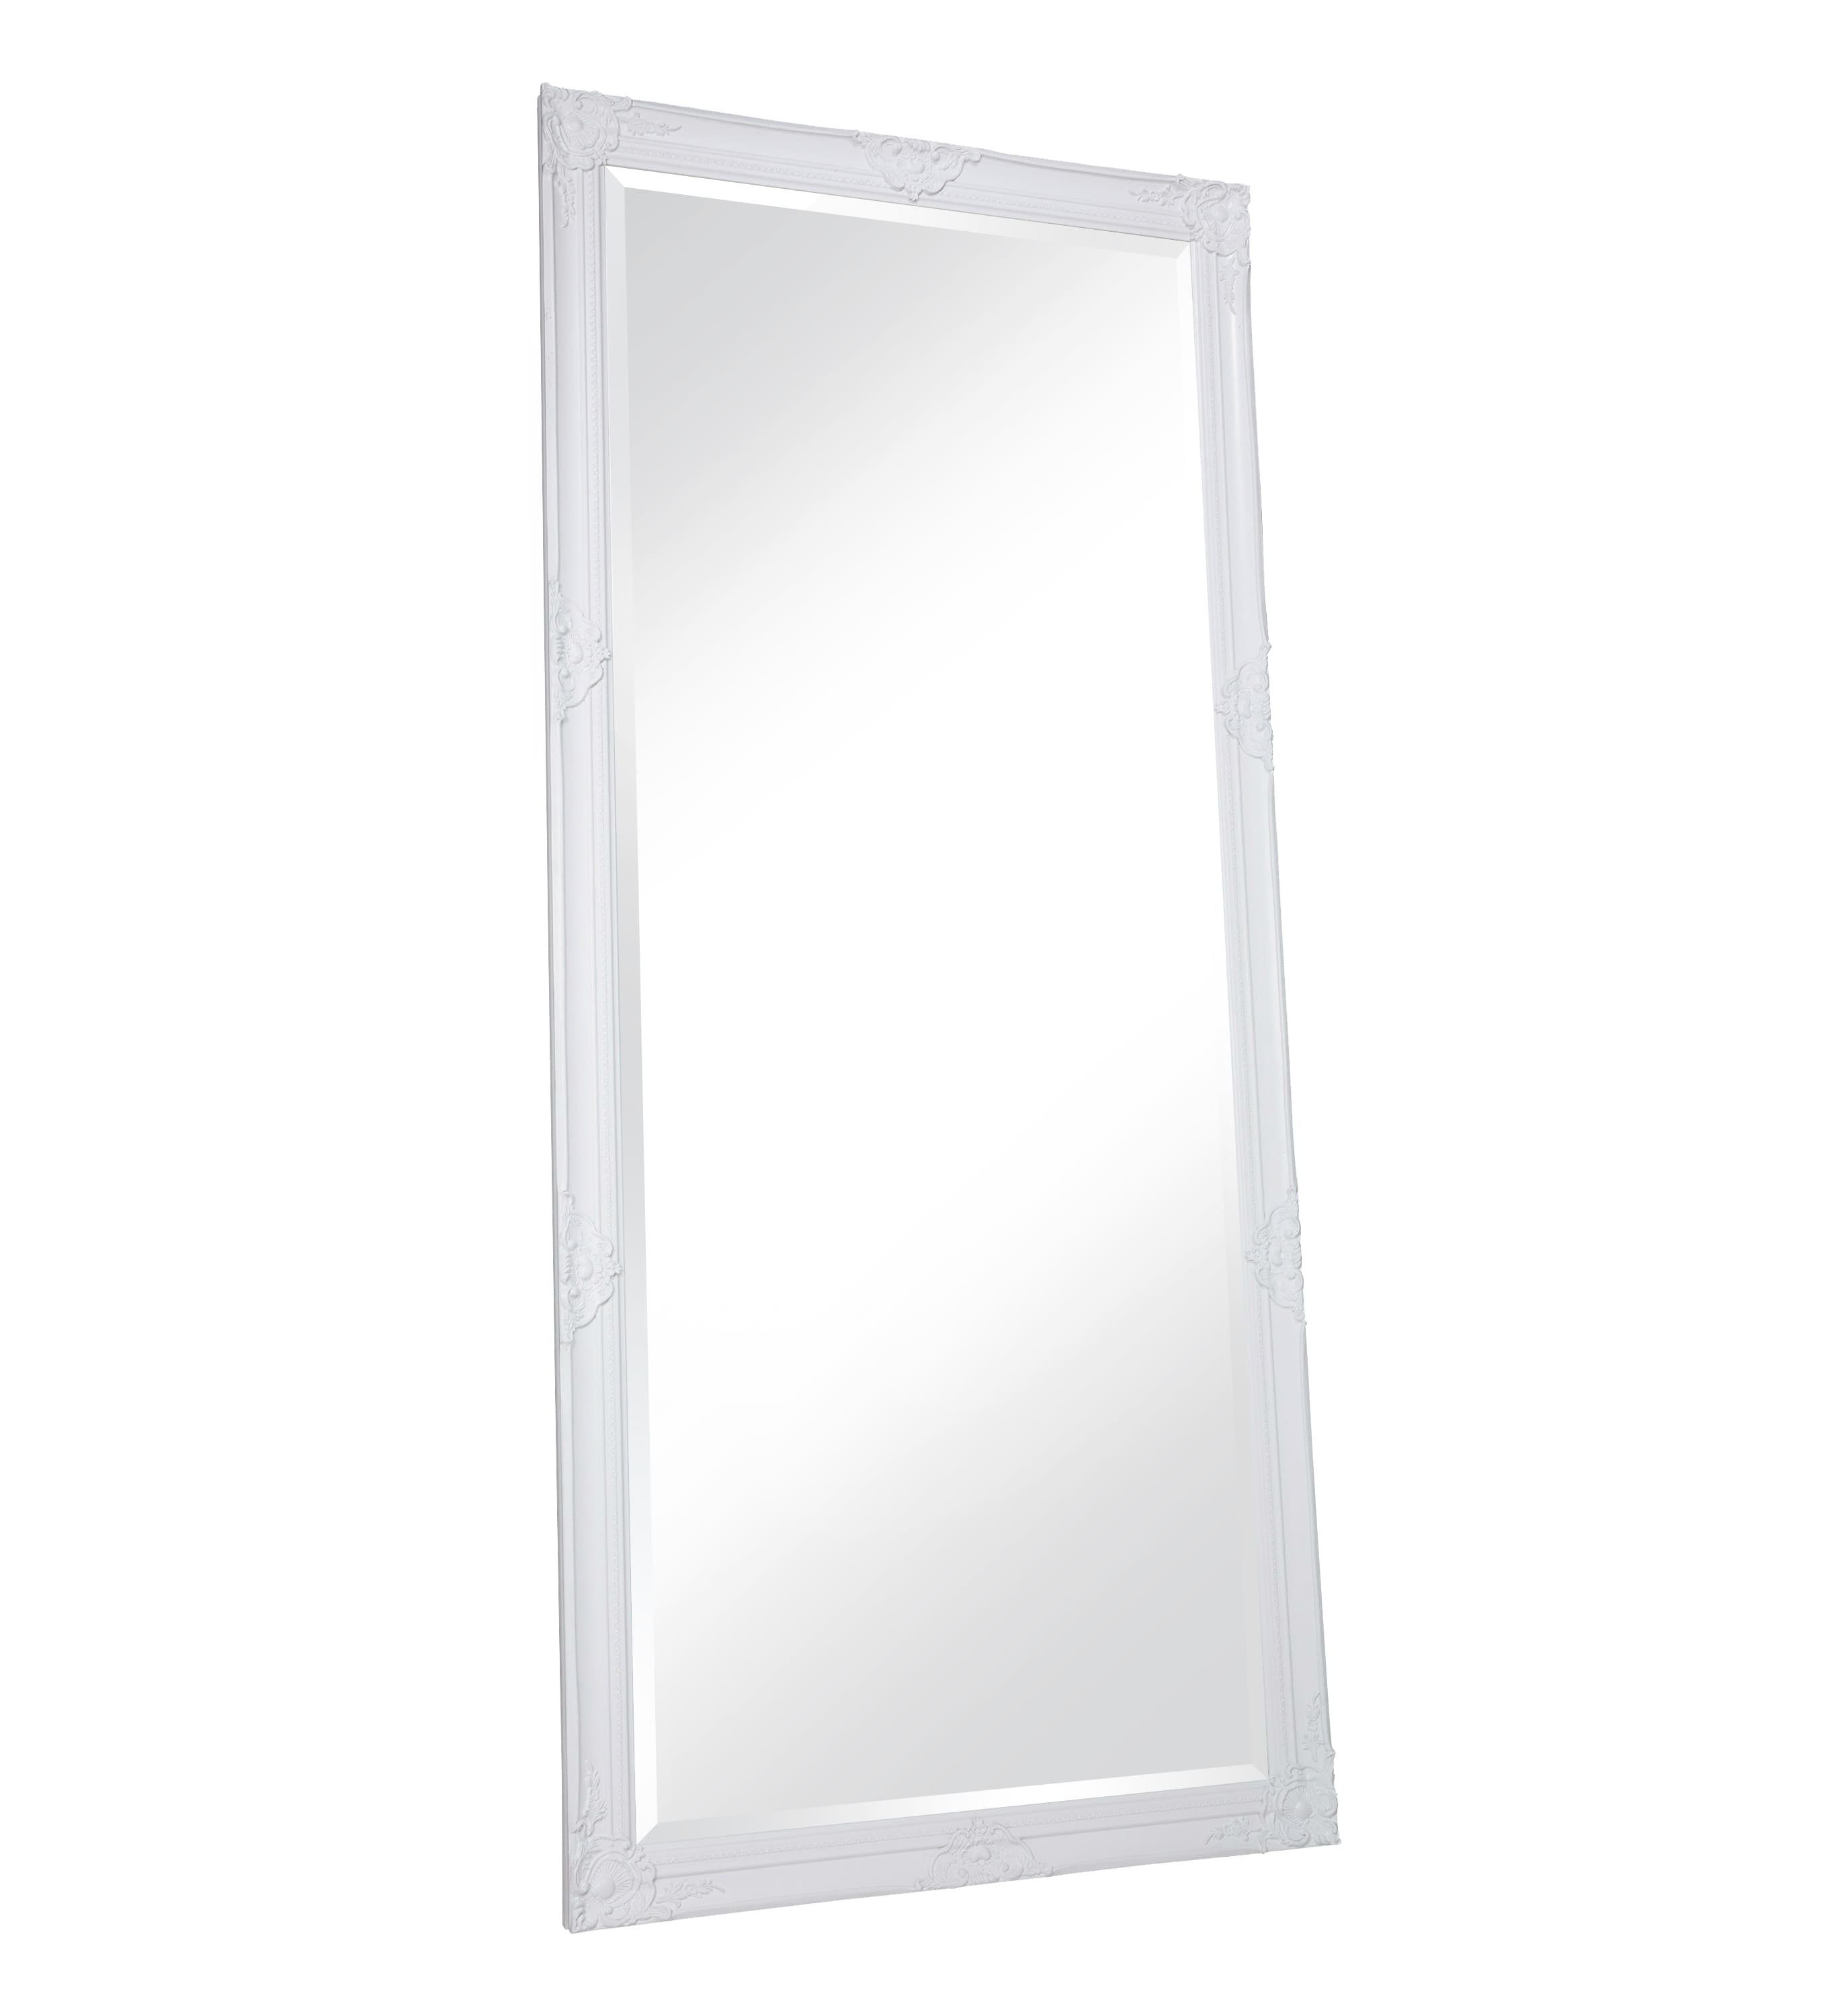 LC Home Spiegel LC Home Wandspiegel XL Barock Spiegel Weiß ca. 180x80 cm Antik-Stil Ganzkörperspiegel